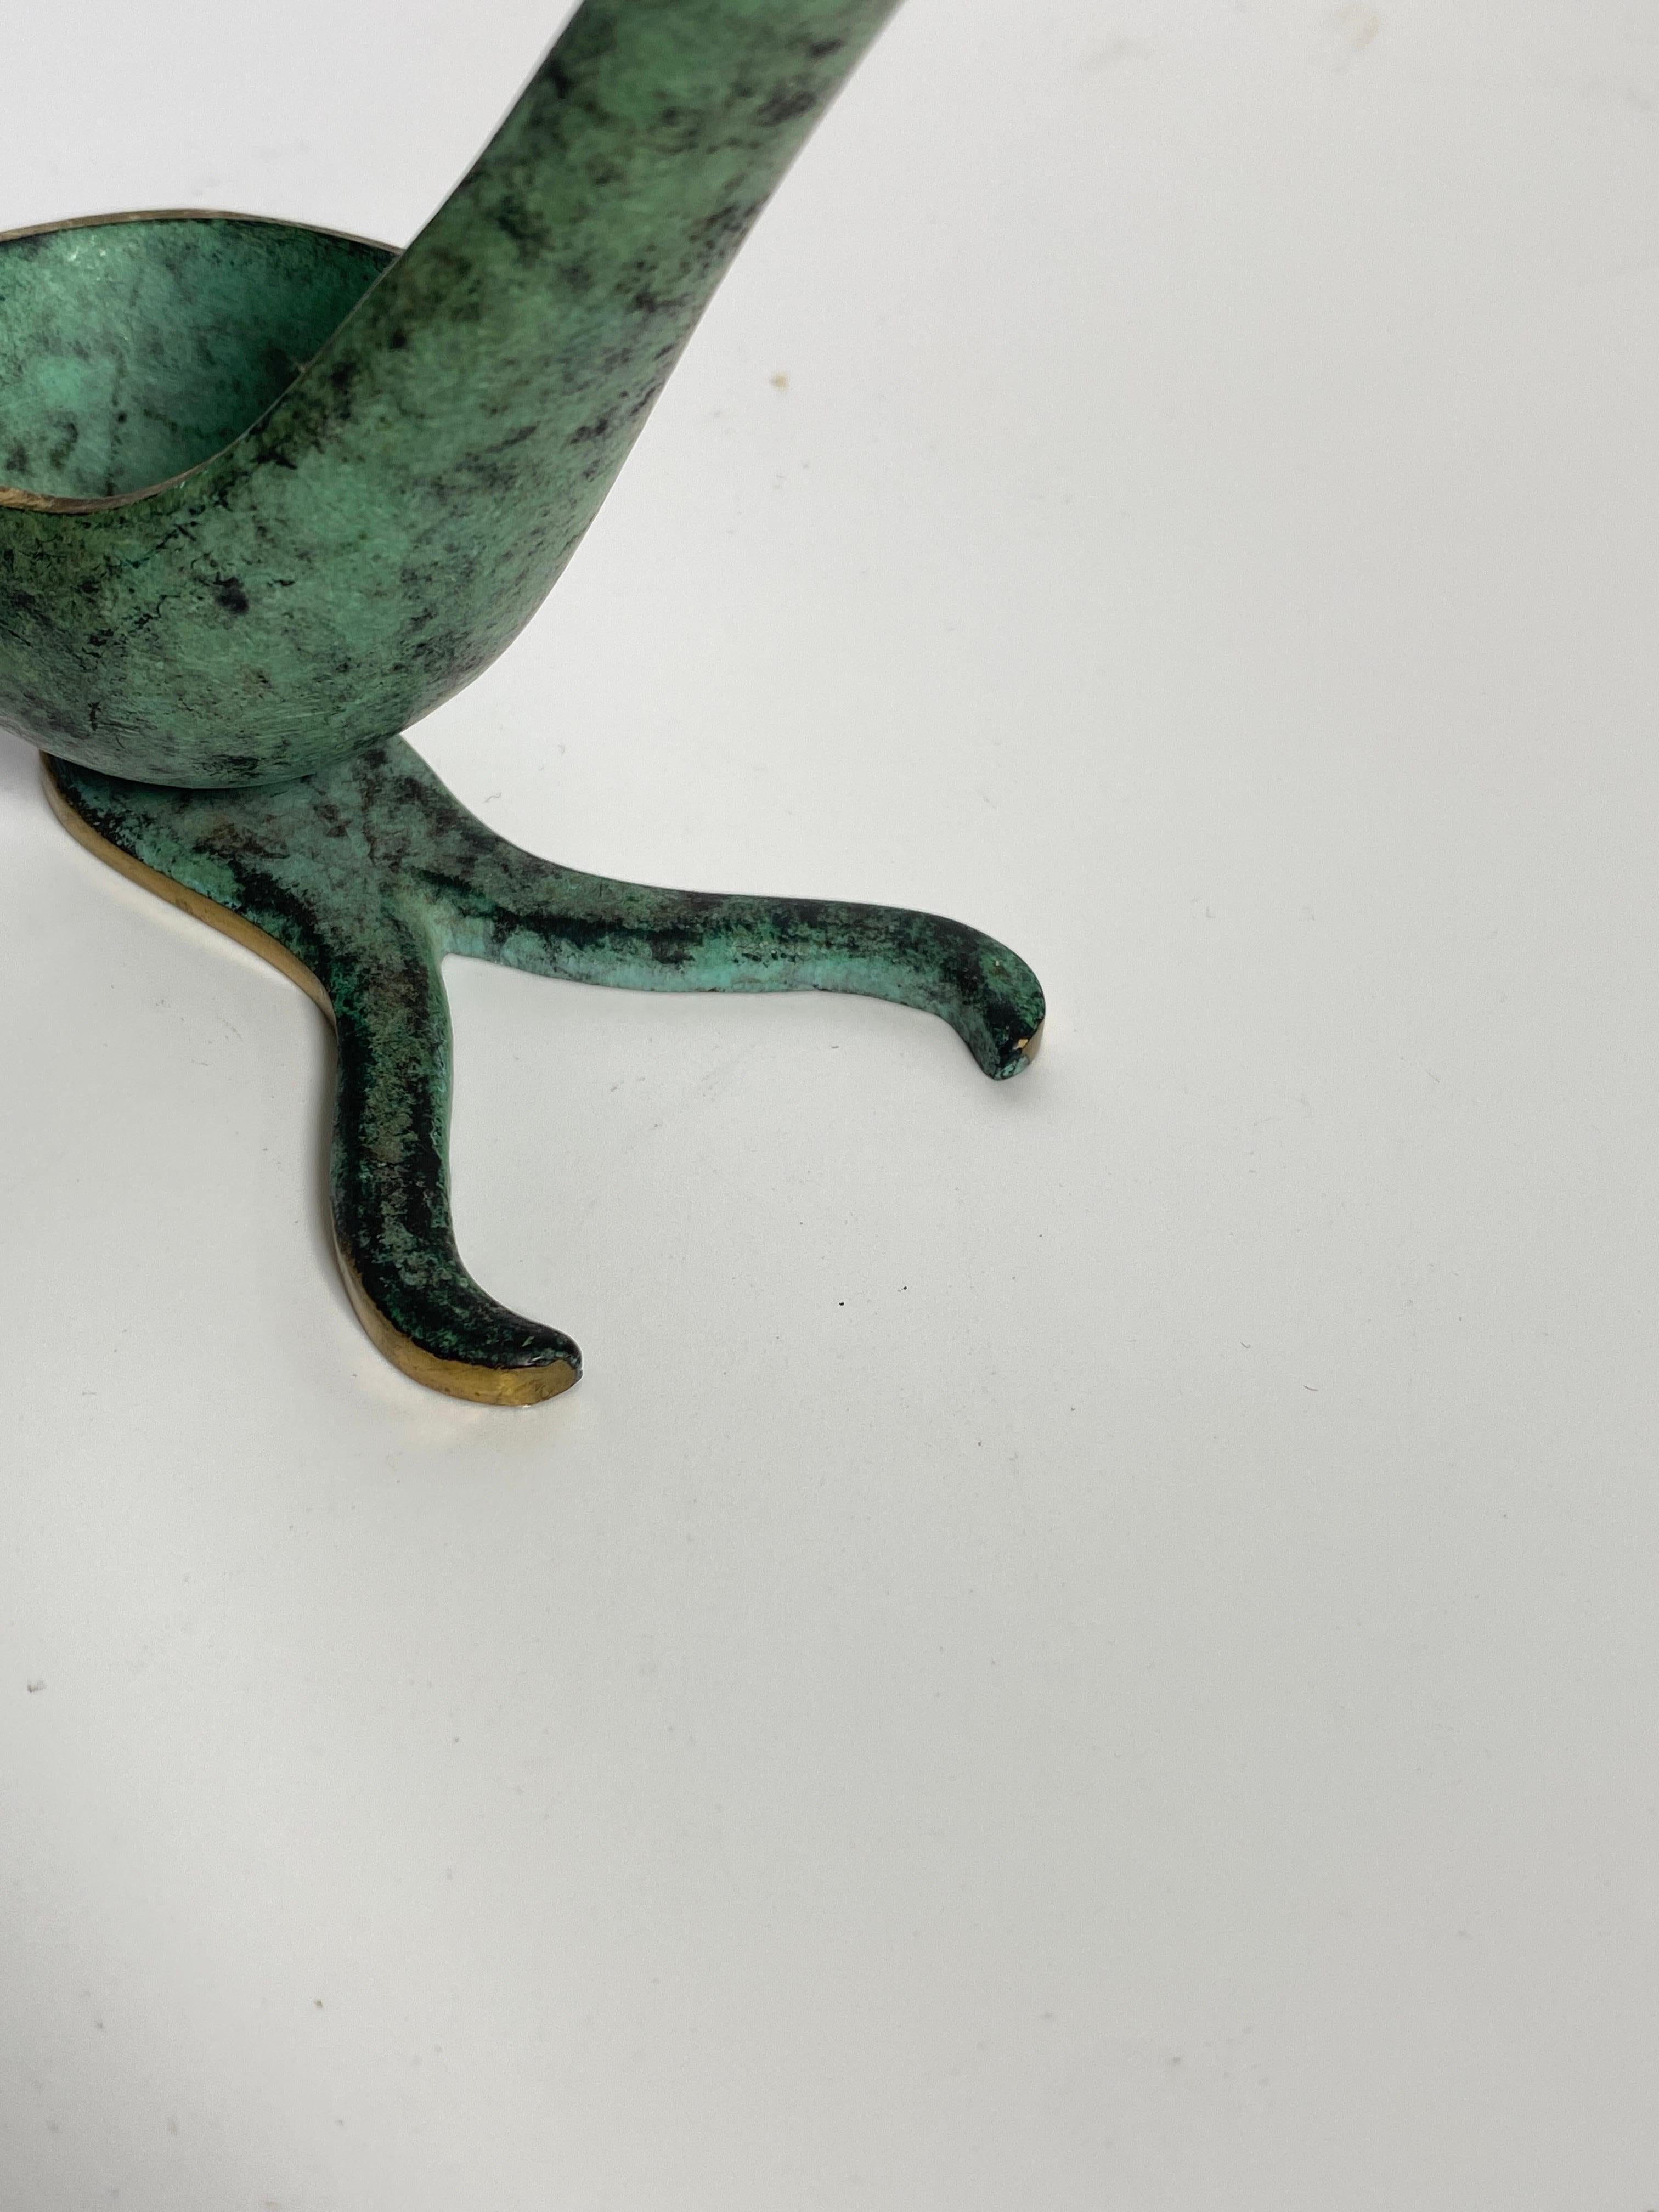 Es ist ein Pfeifenhalter, in patinierter Bronze in grüner und goldener Farbe. Dieser Pfeifenhalter wurde in den 1960er Jahren von Walter Bosse in den USA hergestellt. Er ist in gutem Zustand und lässt sich leicht auf einem Möbelstück platzieren,